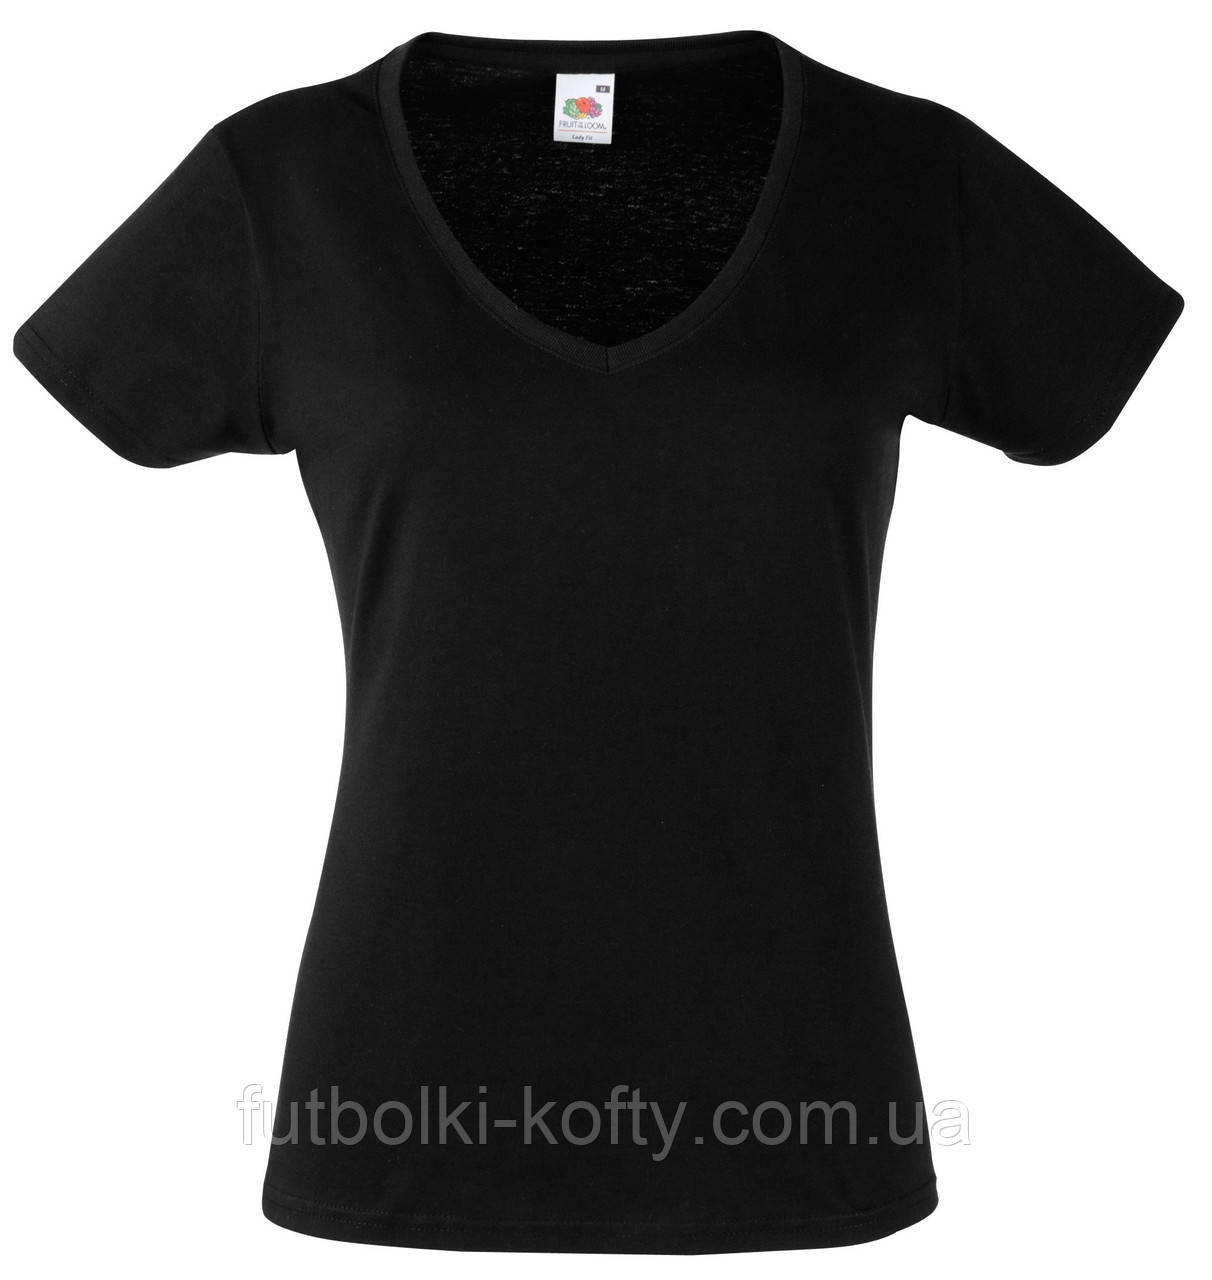 Жіноча футболка З V-подібним вирізом Чорна Fruit of the loom 61-398-36 M